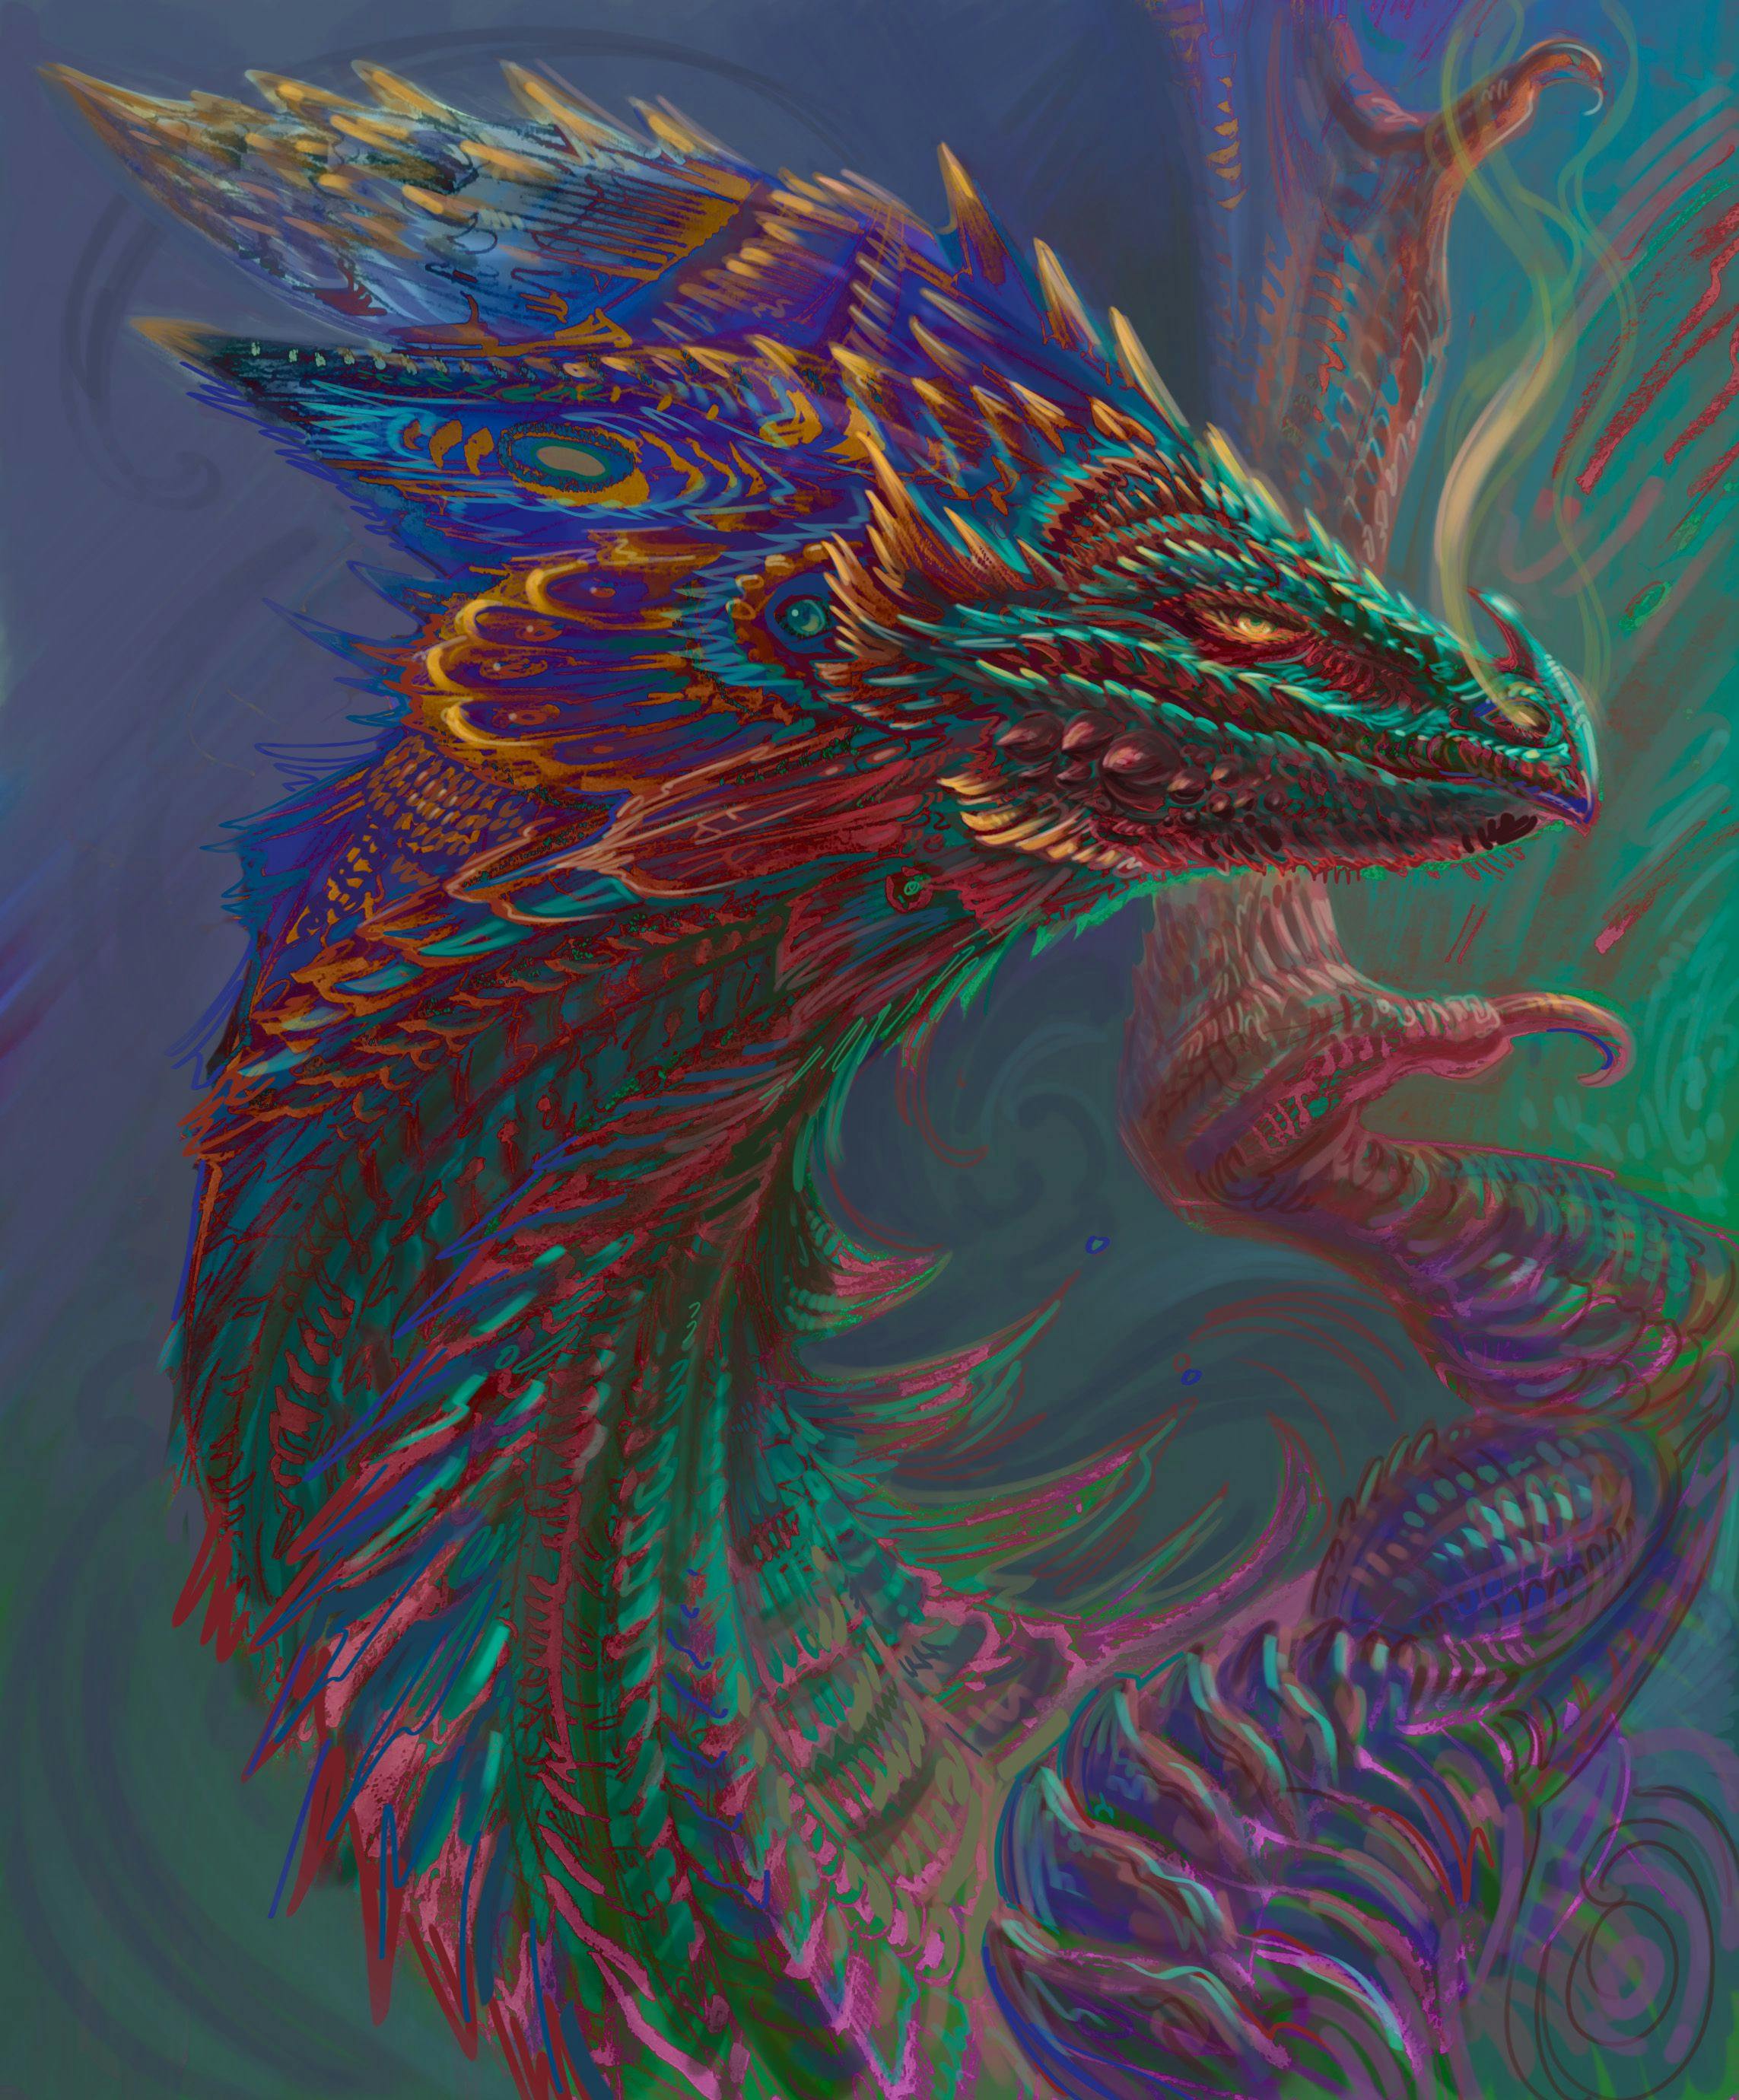 A multi-colored dragon